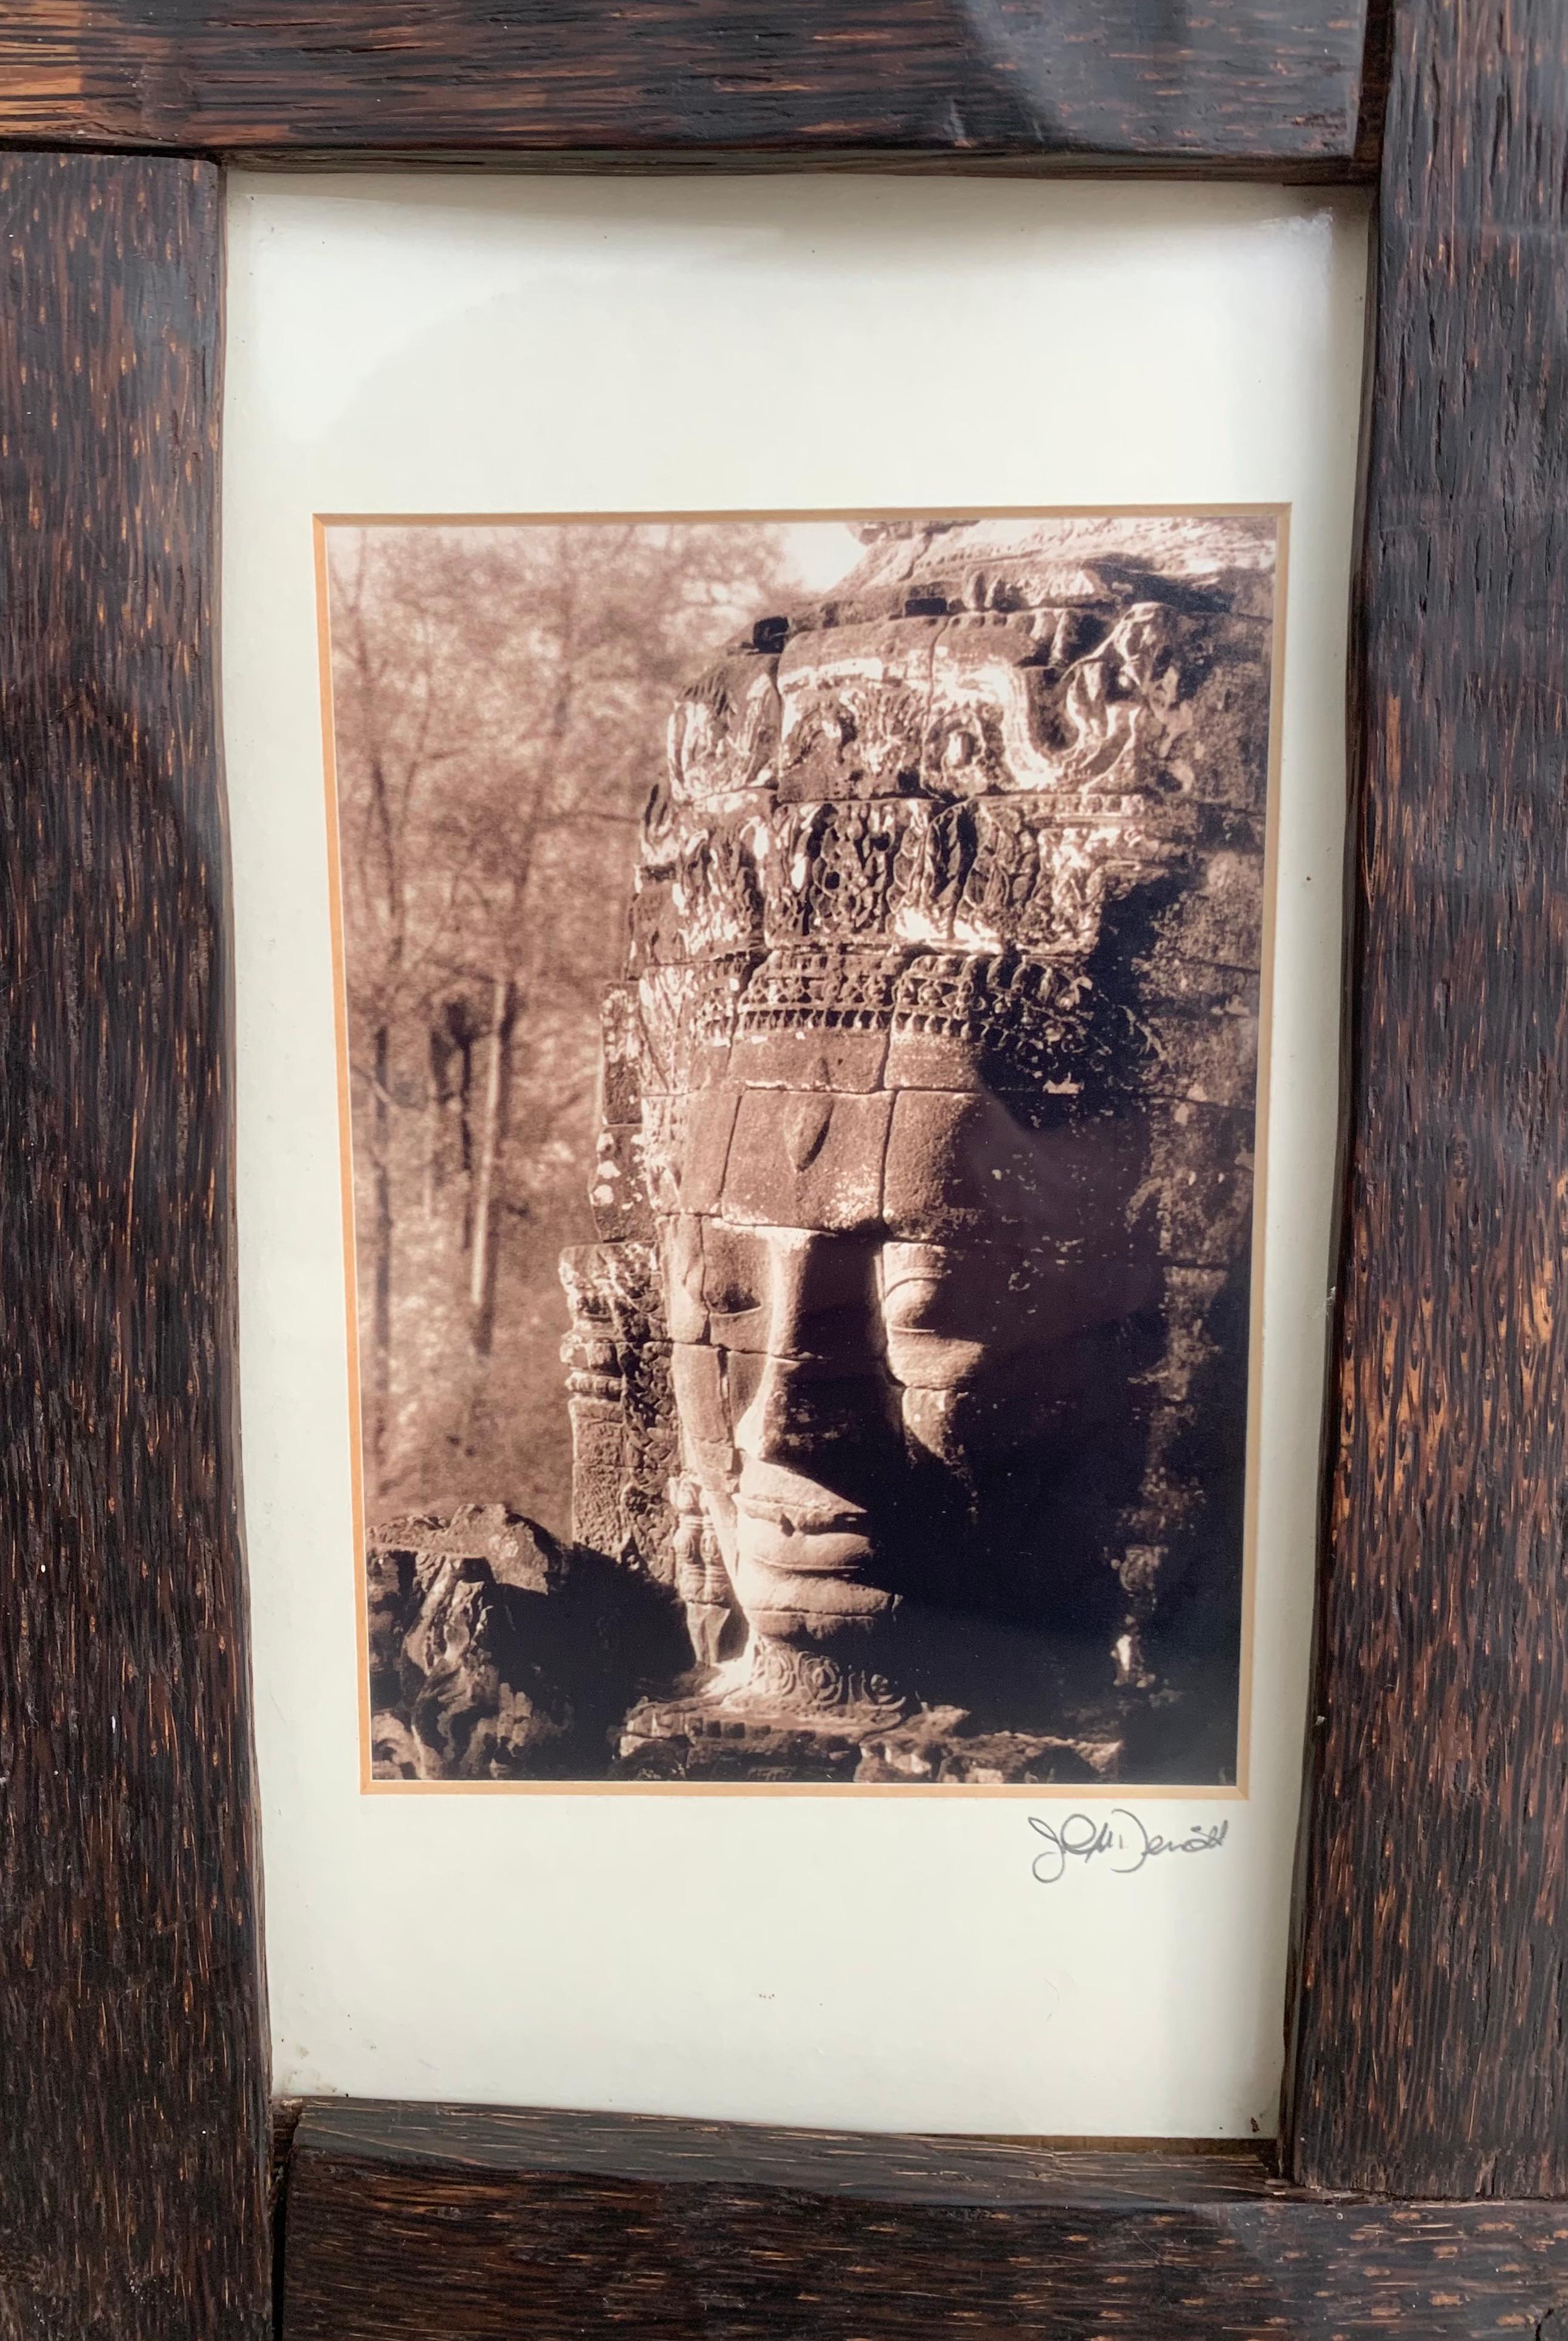 Une photographie vintage du Cambodge encadrée dans un cadre en bois de palmier et verre.

Dimensions : 38 cm de haut x 27 cm de large x 0,05 cm de profondeur : Hauteur 38cm x Largeur 27cm x Profondeur 0.05cm.
    